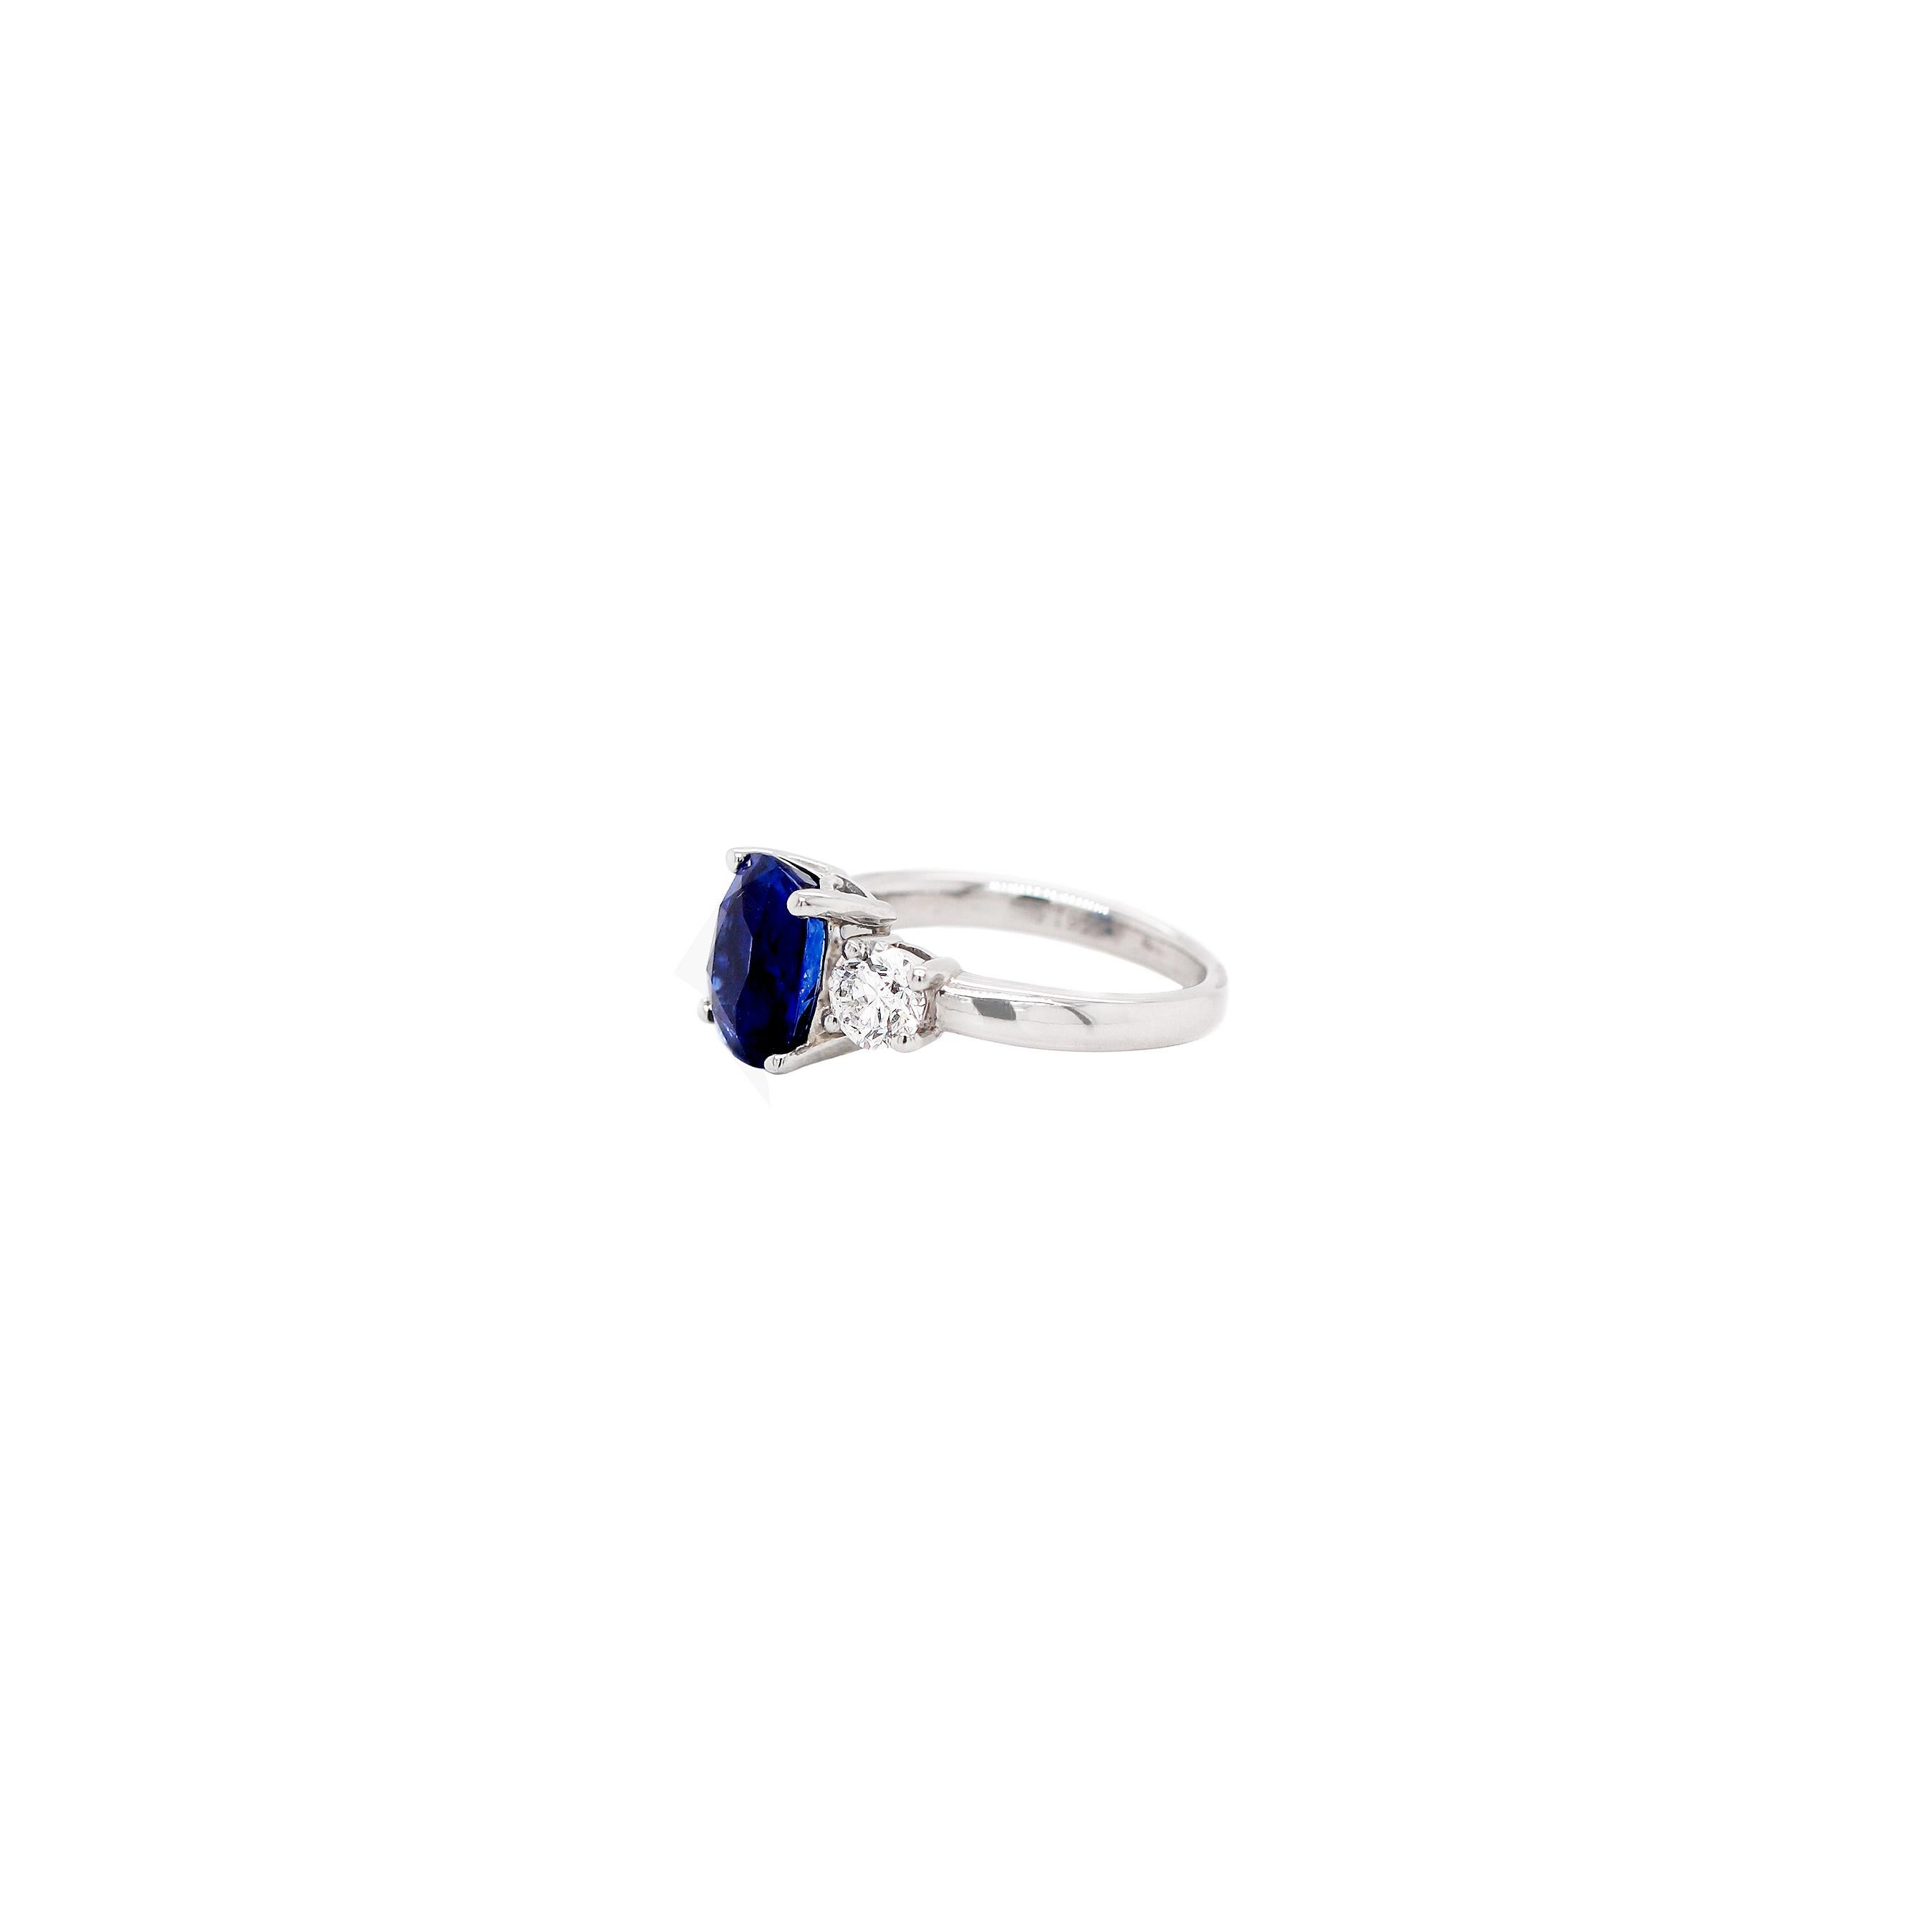 Ein exquisiter Dreisteinring mit einem schönen kissenförmigen königsblauen Saphir von 4,09ct in einer offenen Fassung mit vier Krallen. Dieser wunderschöne Stein wird von zwei zertifizierten runden Diamanten im Brillantschliff D SI2 mit einem